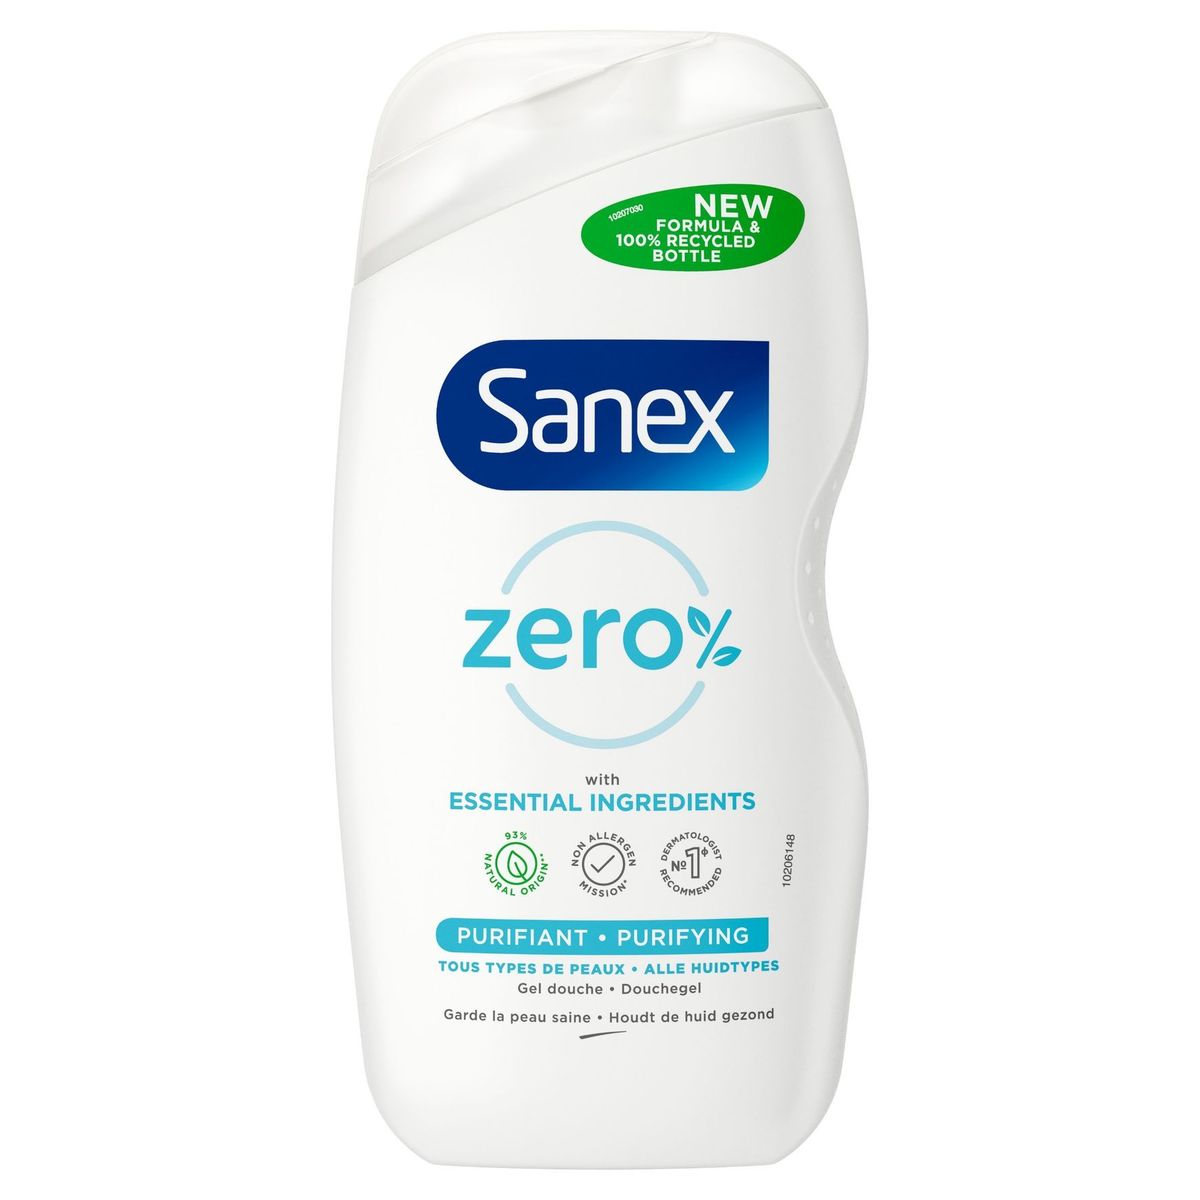 Gel douche Purifiant Sanex Zero% pour tous types de peau {500ml}